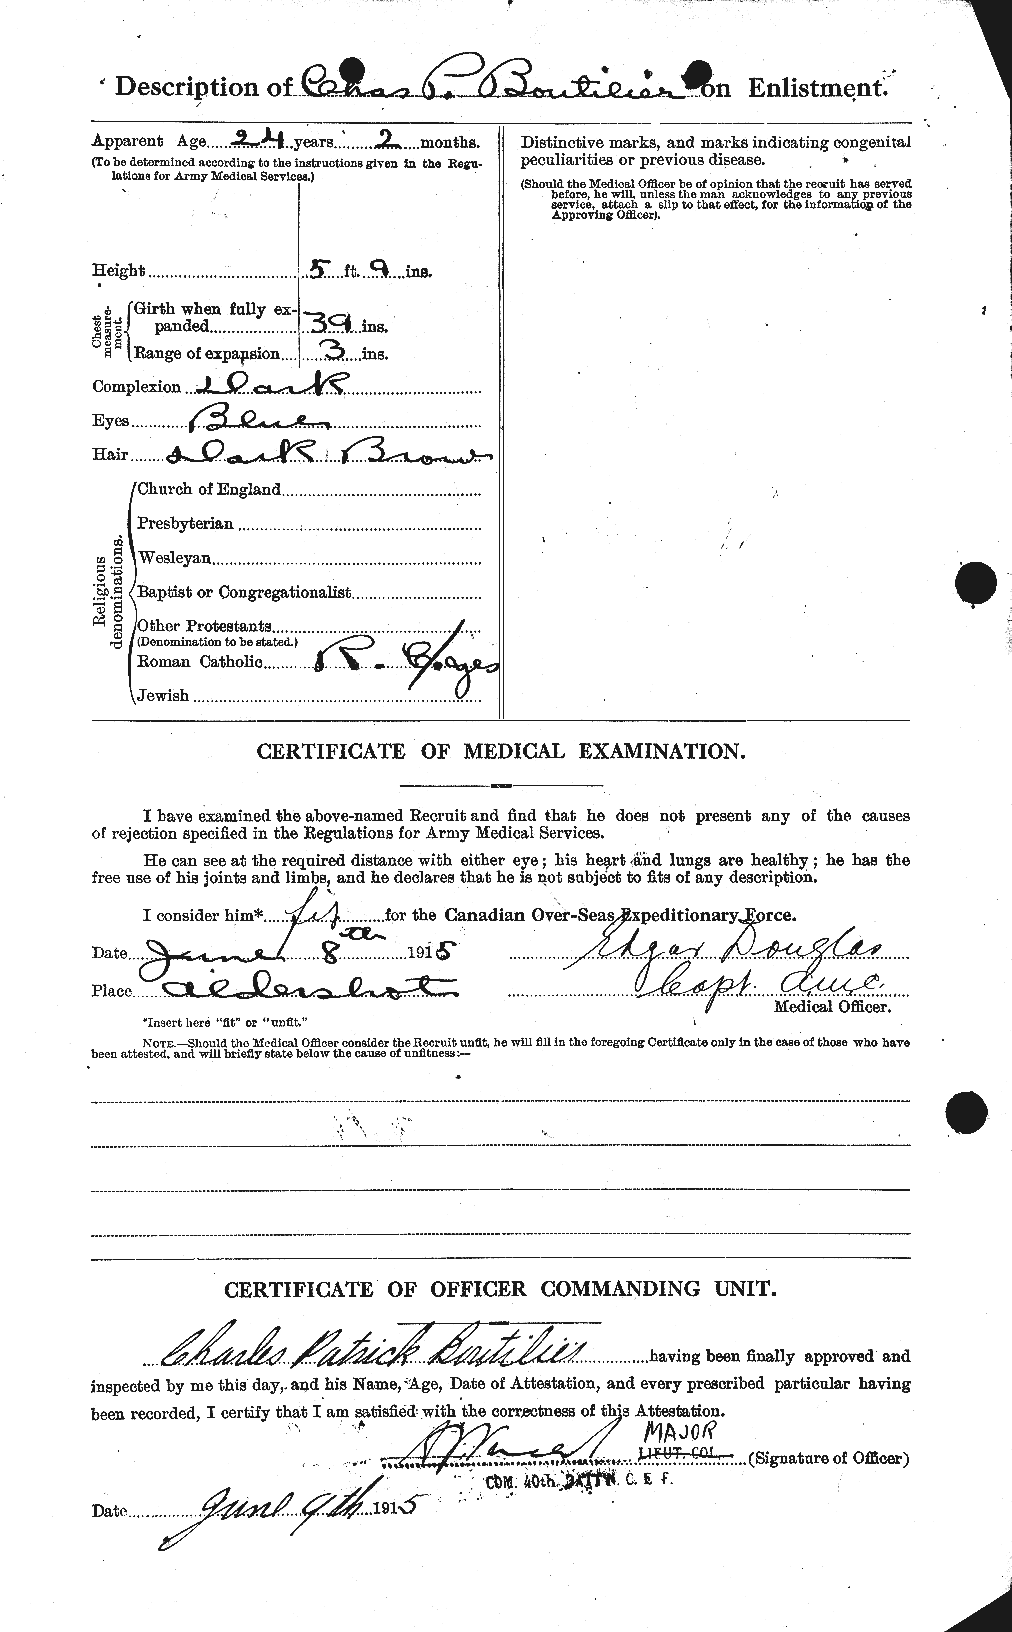 Dossiers du Personnel de la Première Guerre mondiale - CEC 251728b